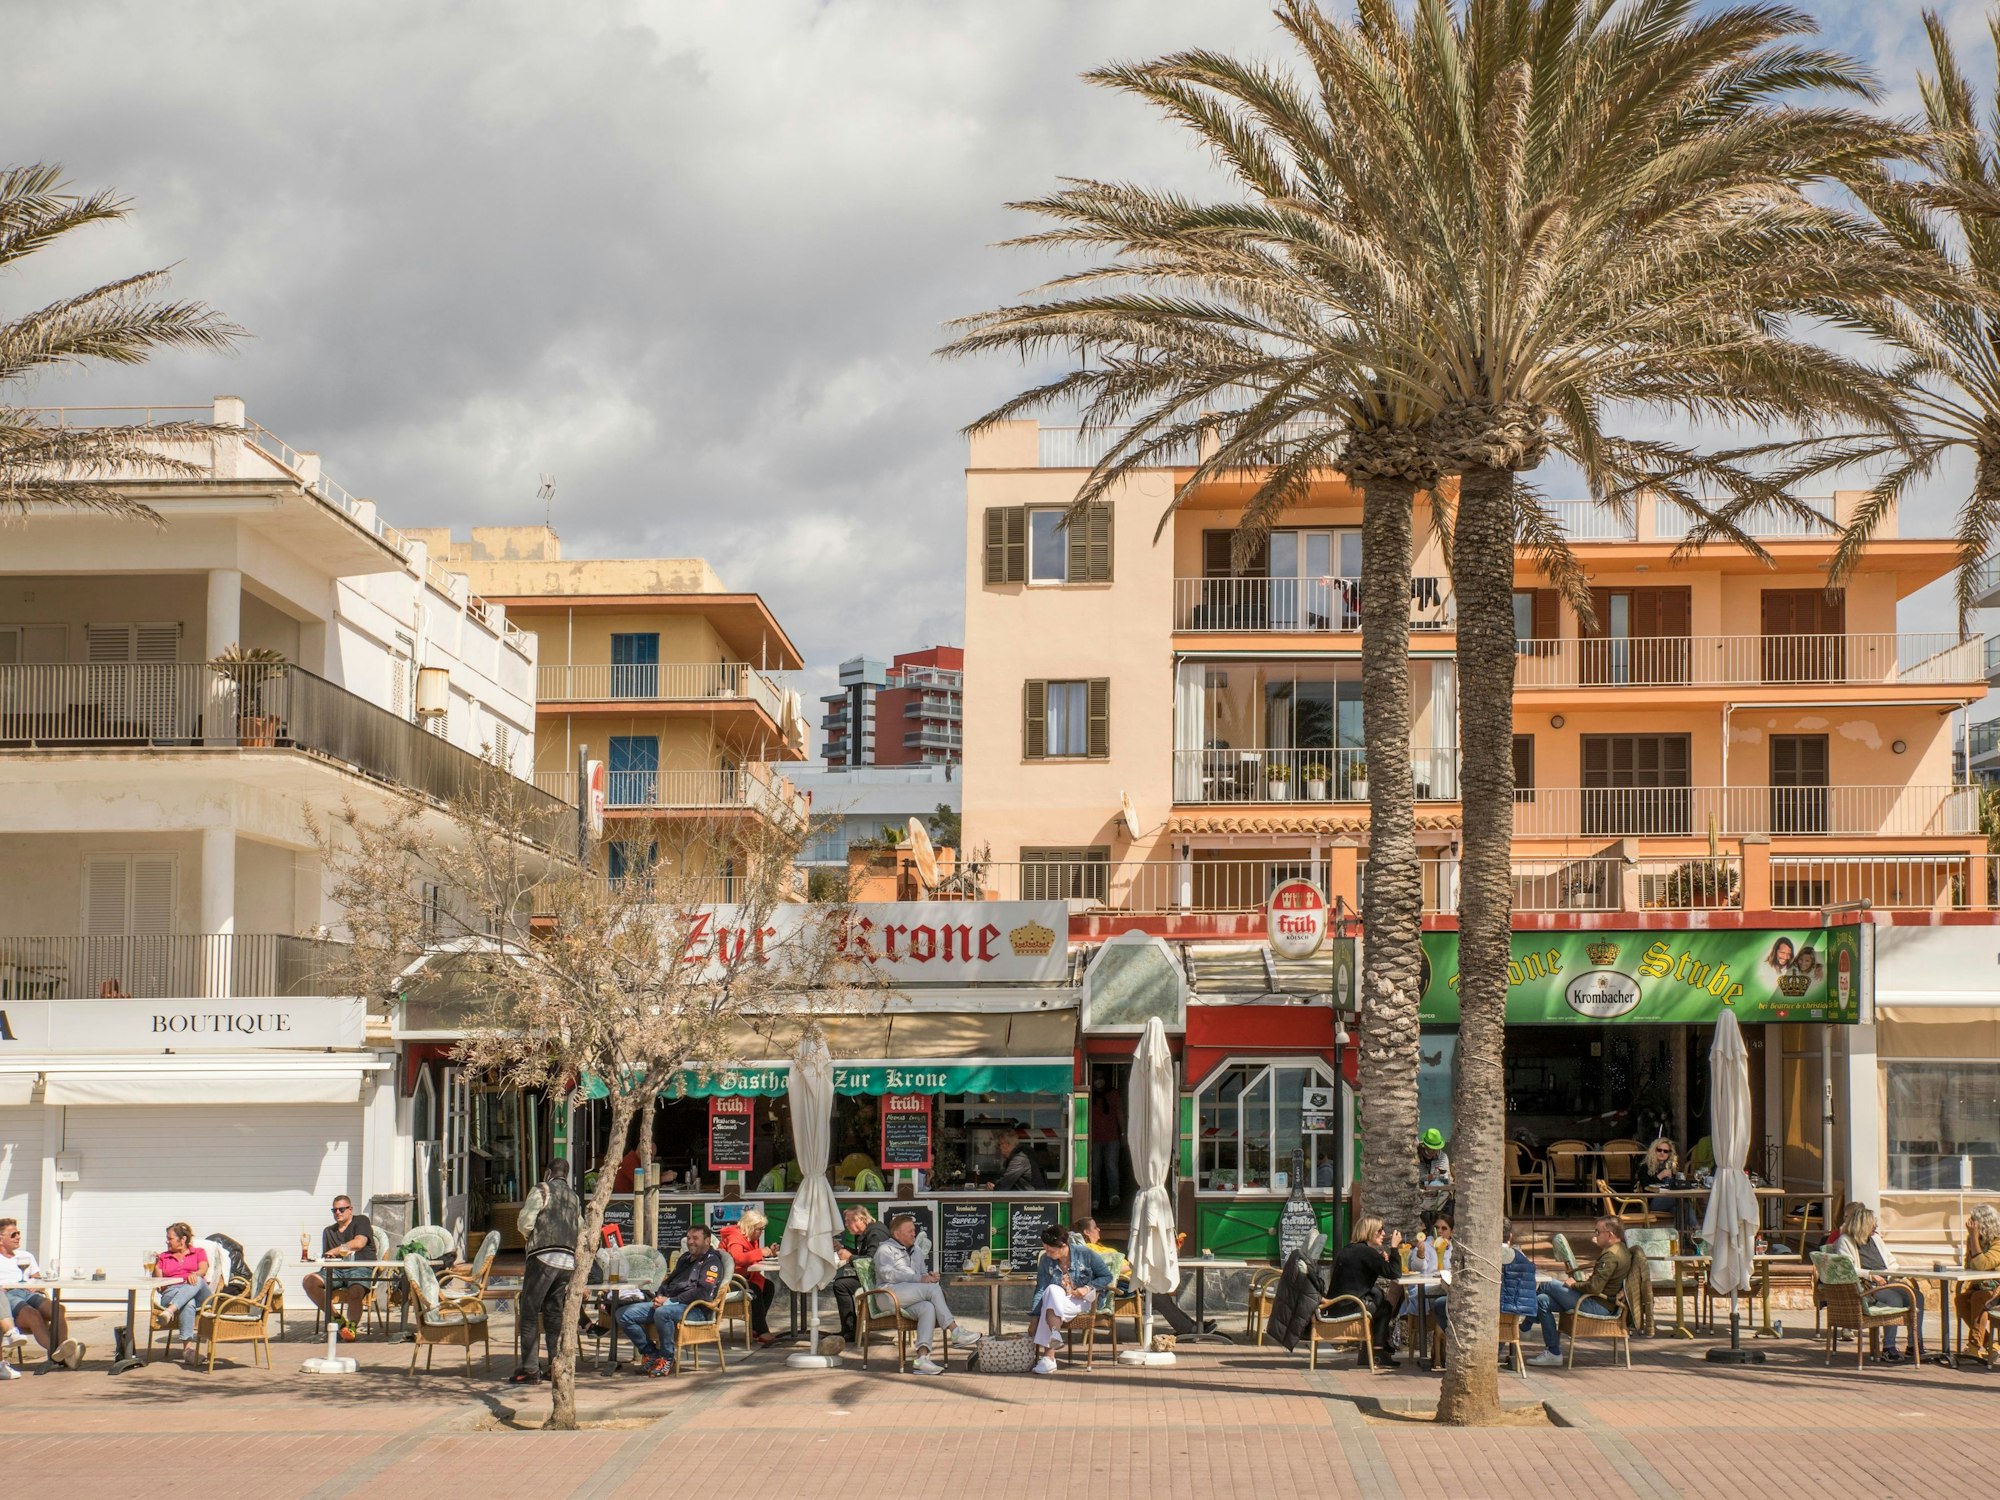 Deutsche Touristen und Touristinnen, hier im März 2021, sitzen in der Bar „Zur Krone“ und „Krone Stube“ und genießen einen Drink in der Sonne an der Playa de Palma auf Mallorca.